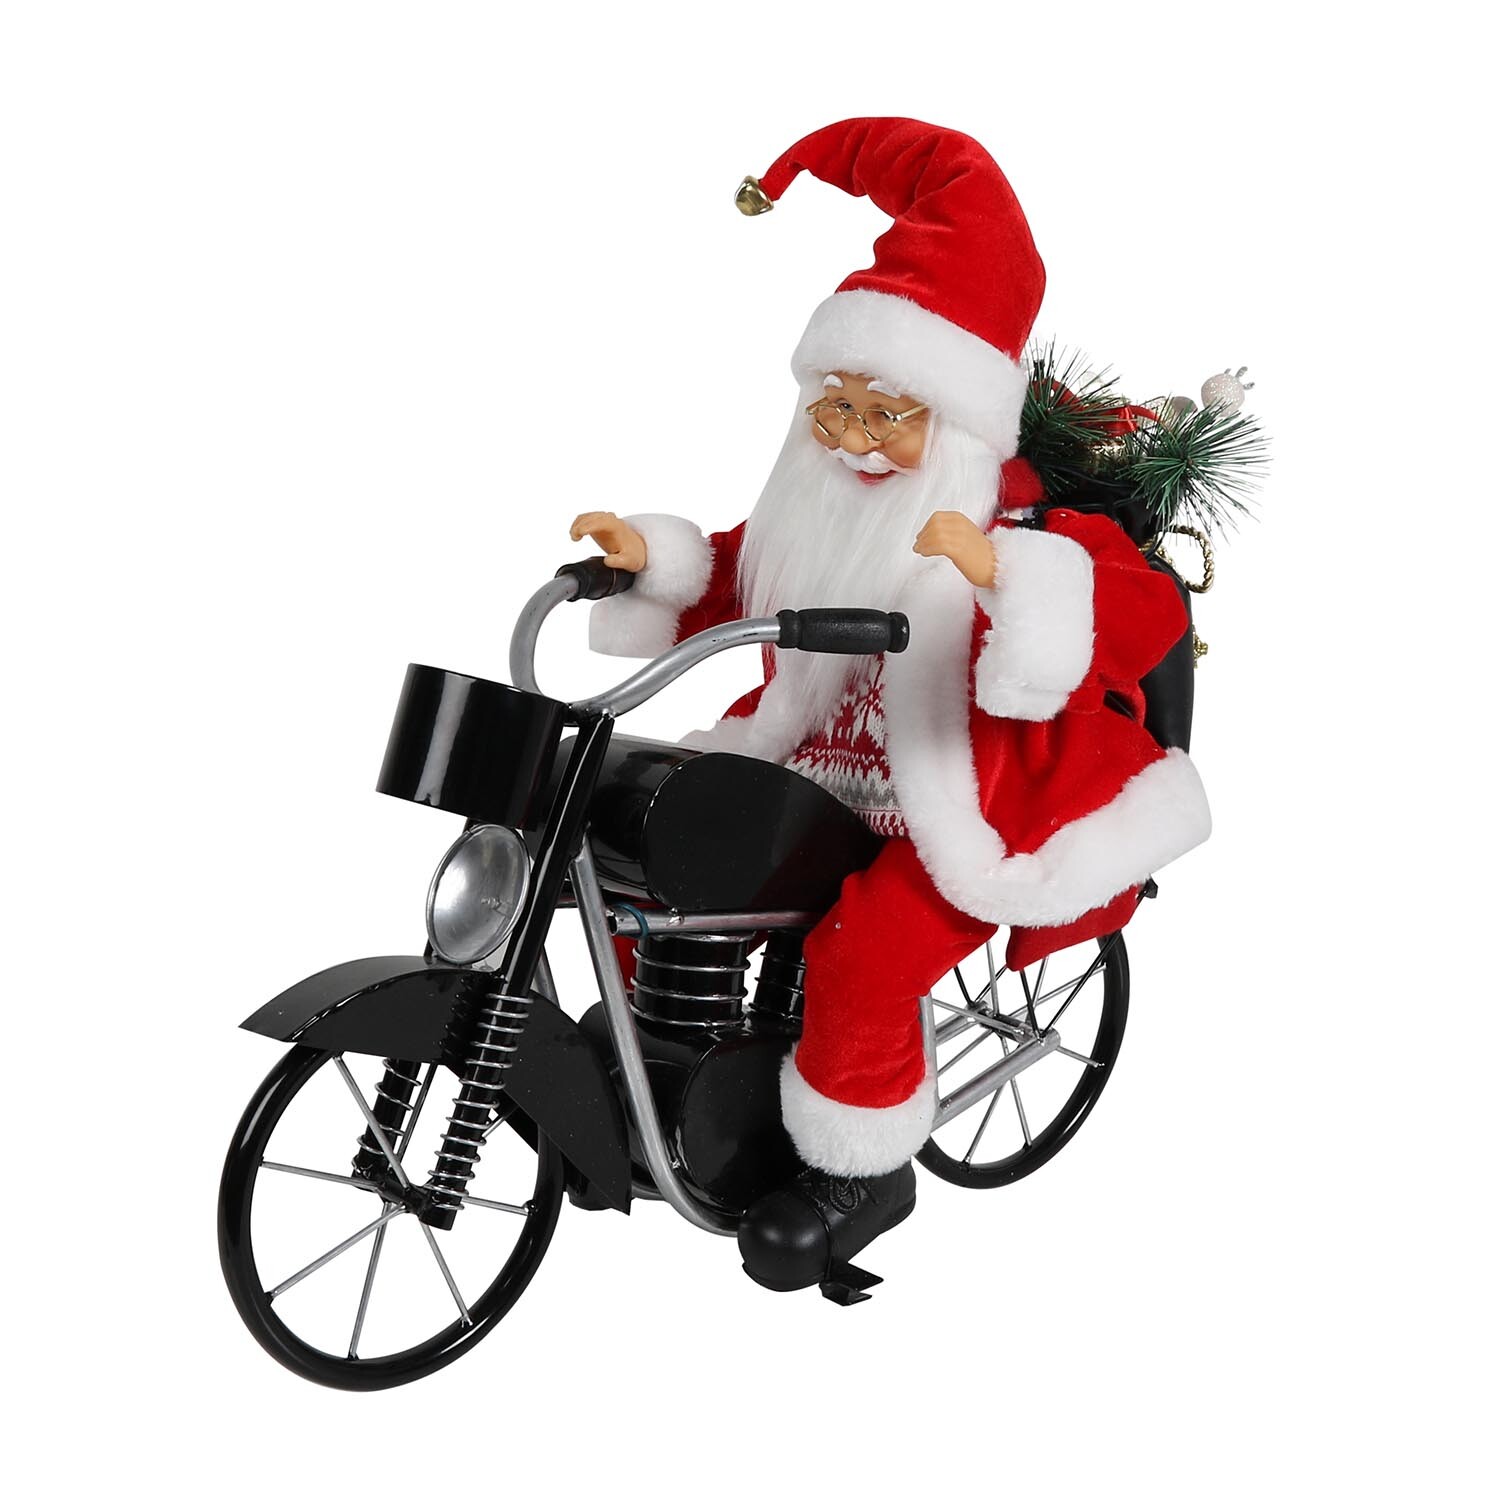 Musical Santa Riding Motorbike - Red Image 5